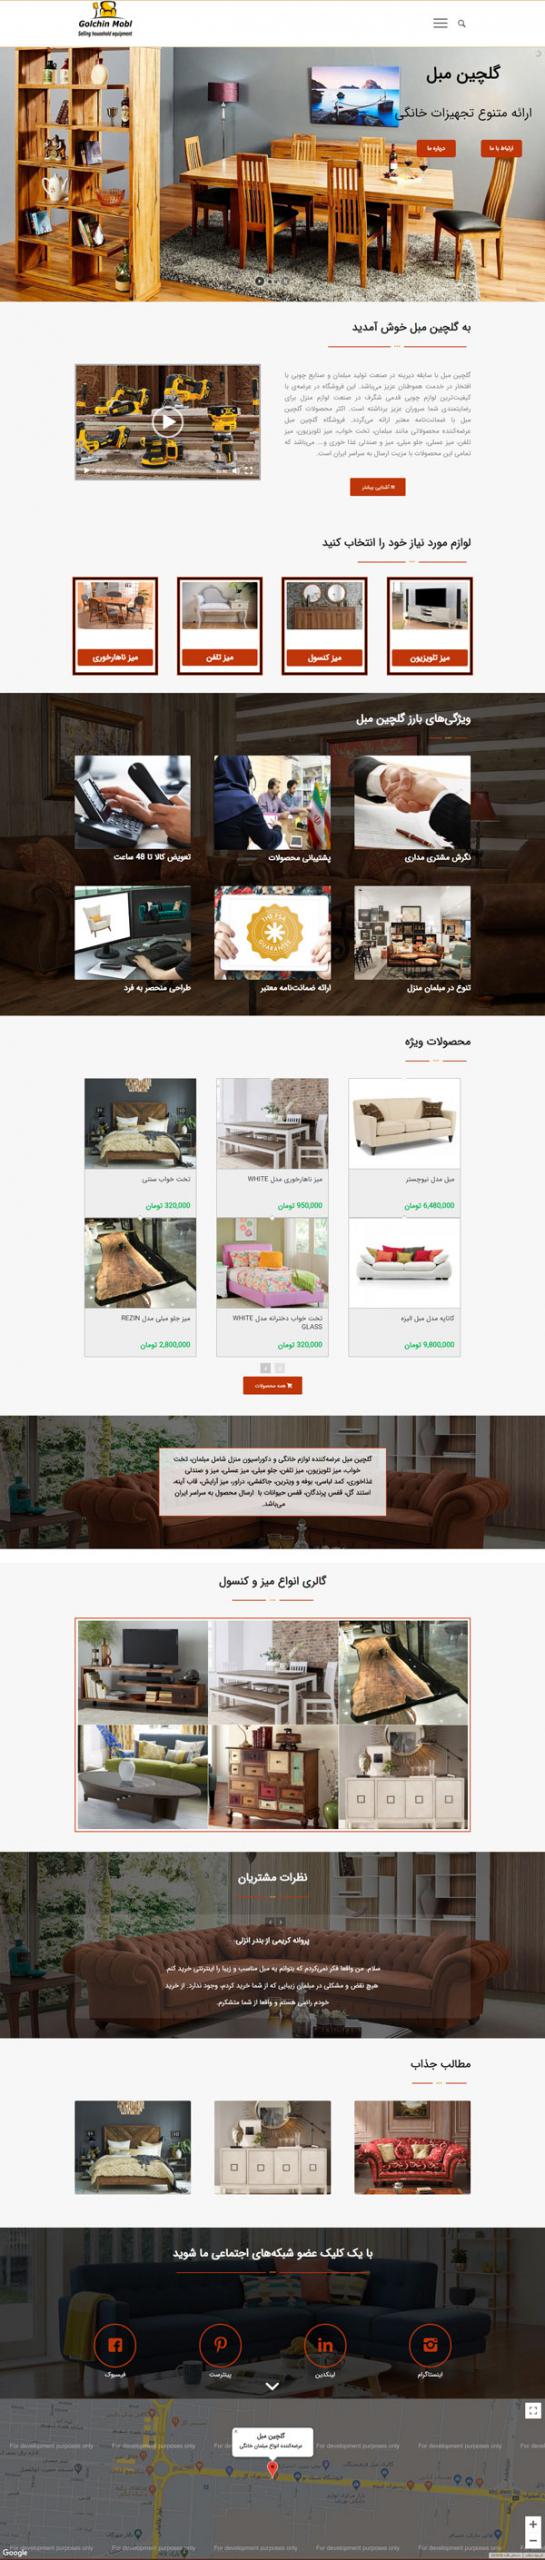 طراحی سایت گلچین مبل | فروشگاه مبلمان راحتی و استیل